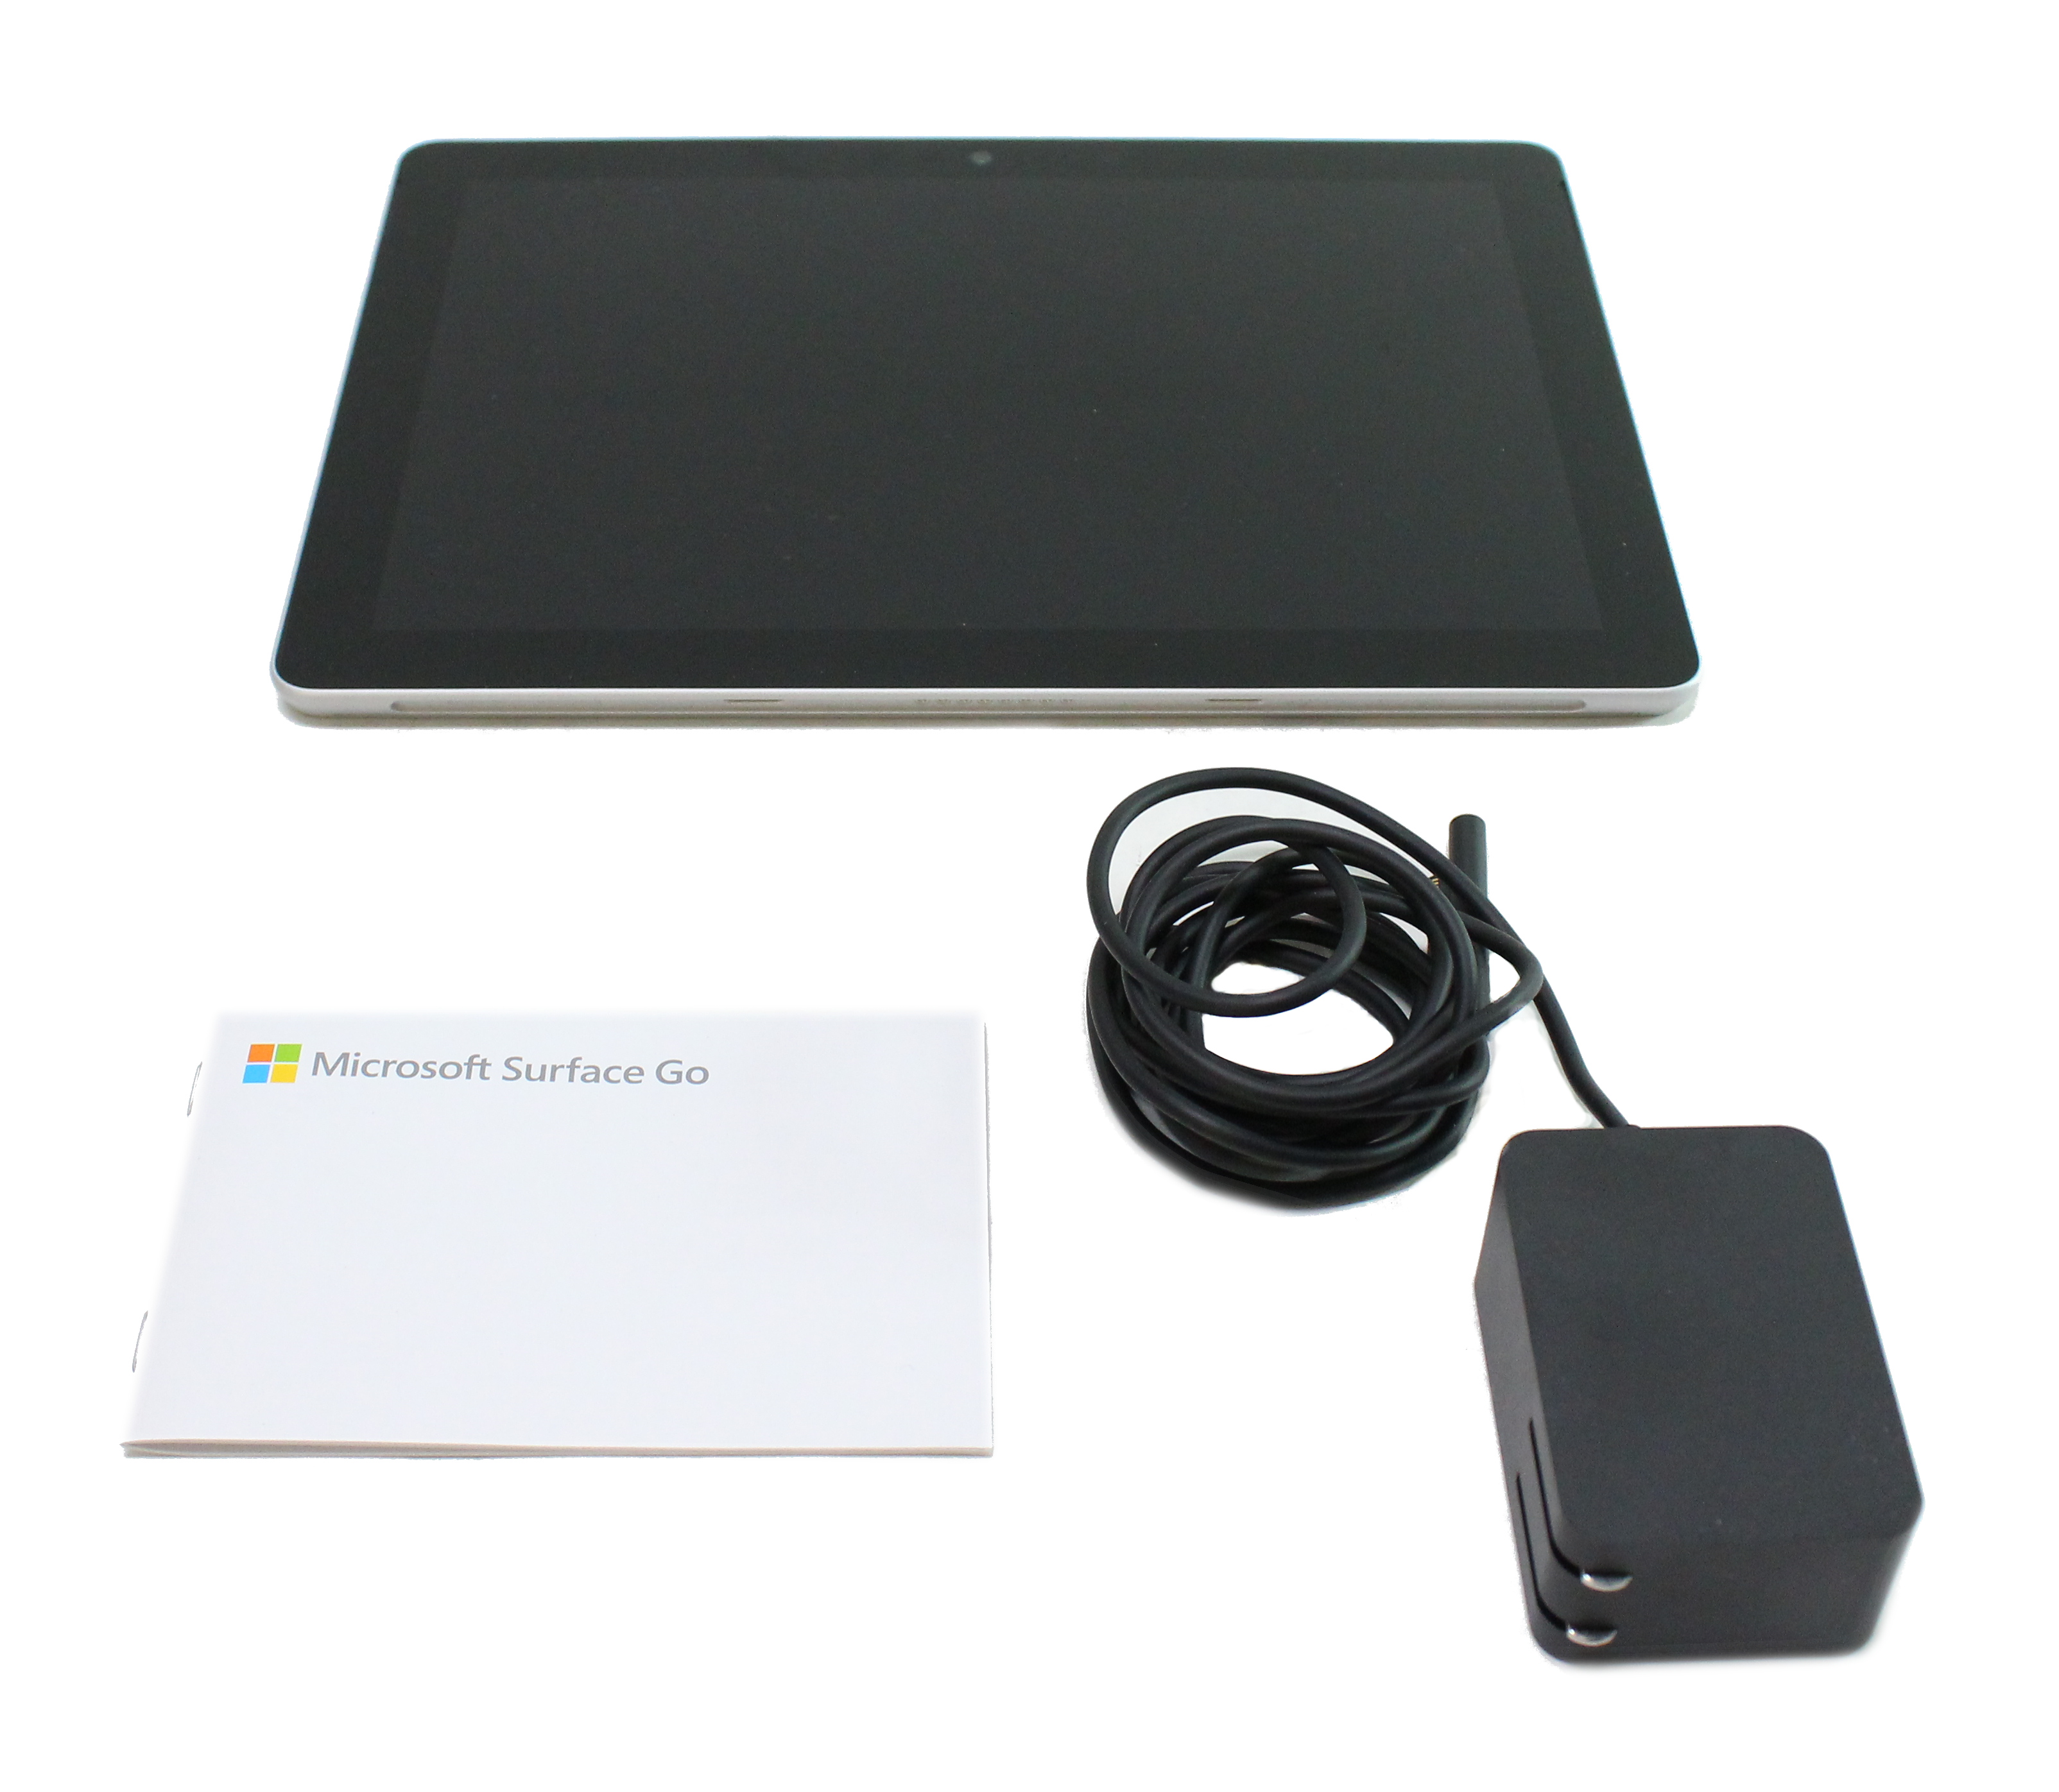 Microsoft Surface Go 1824 10 Intel Pentium 4415Y 1.6 GHz RAM 8Gb ...